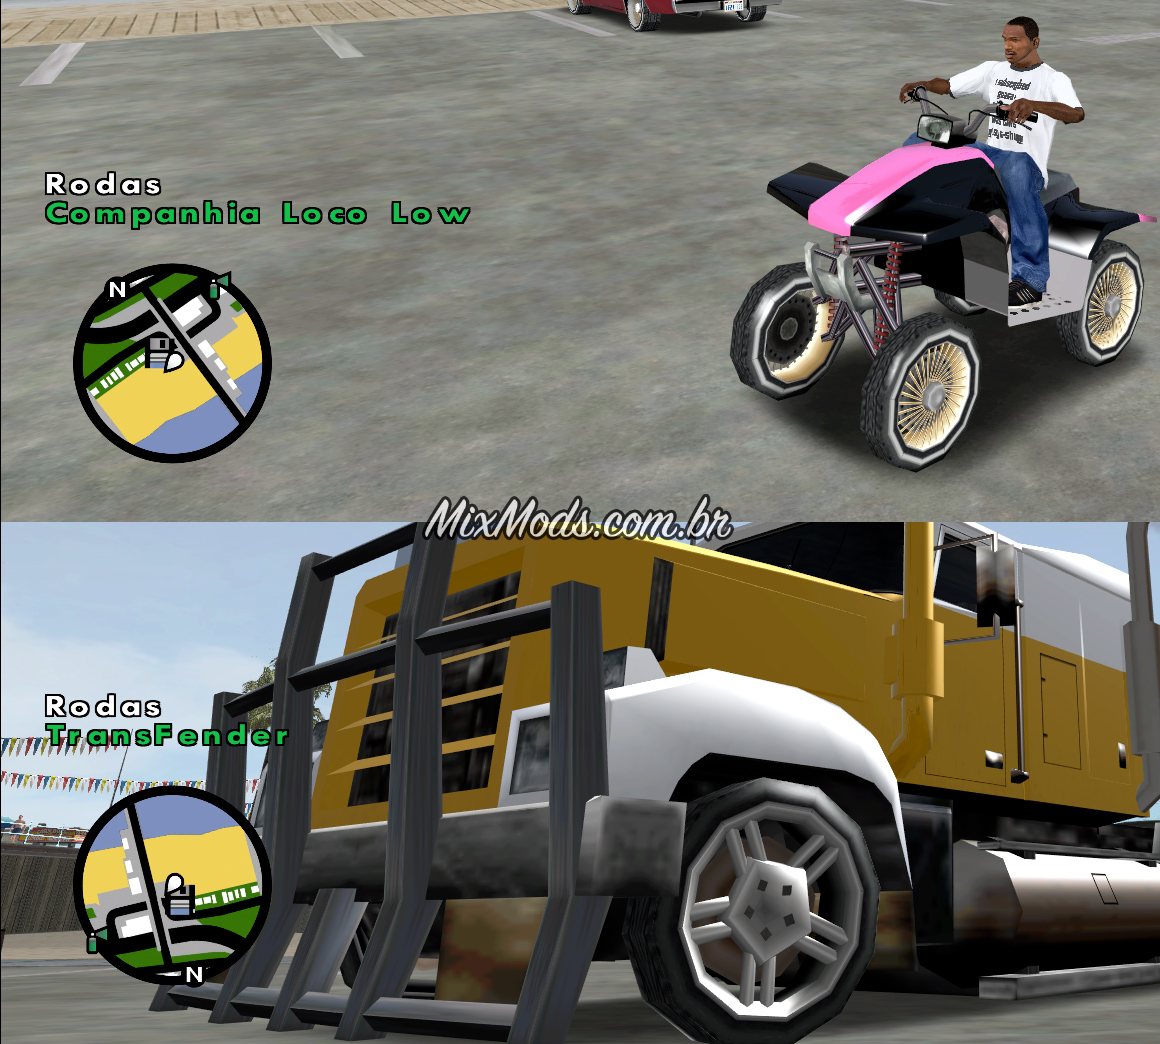 GTA San Andreas: mods para ter carros reais no jogo - Liga dos Games